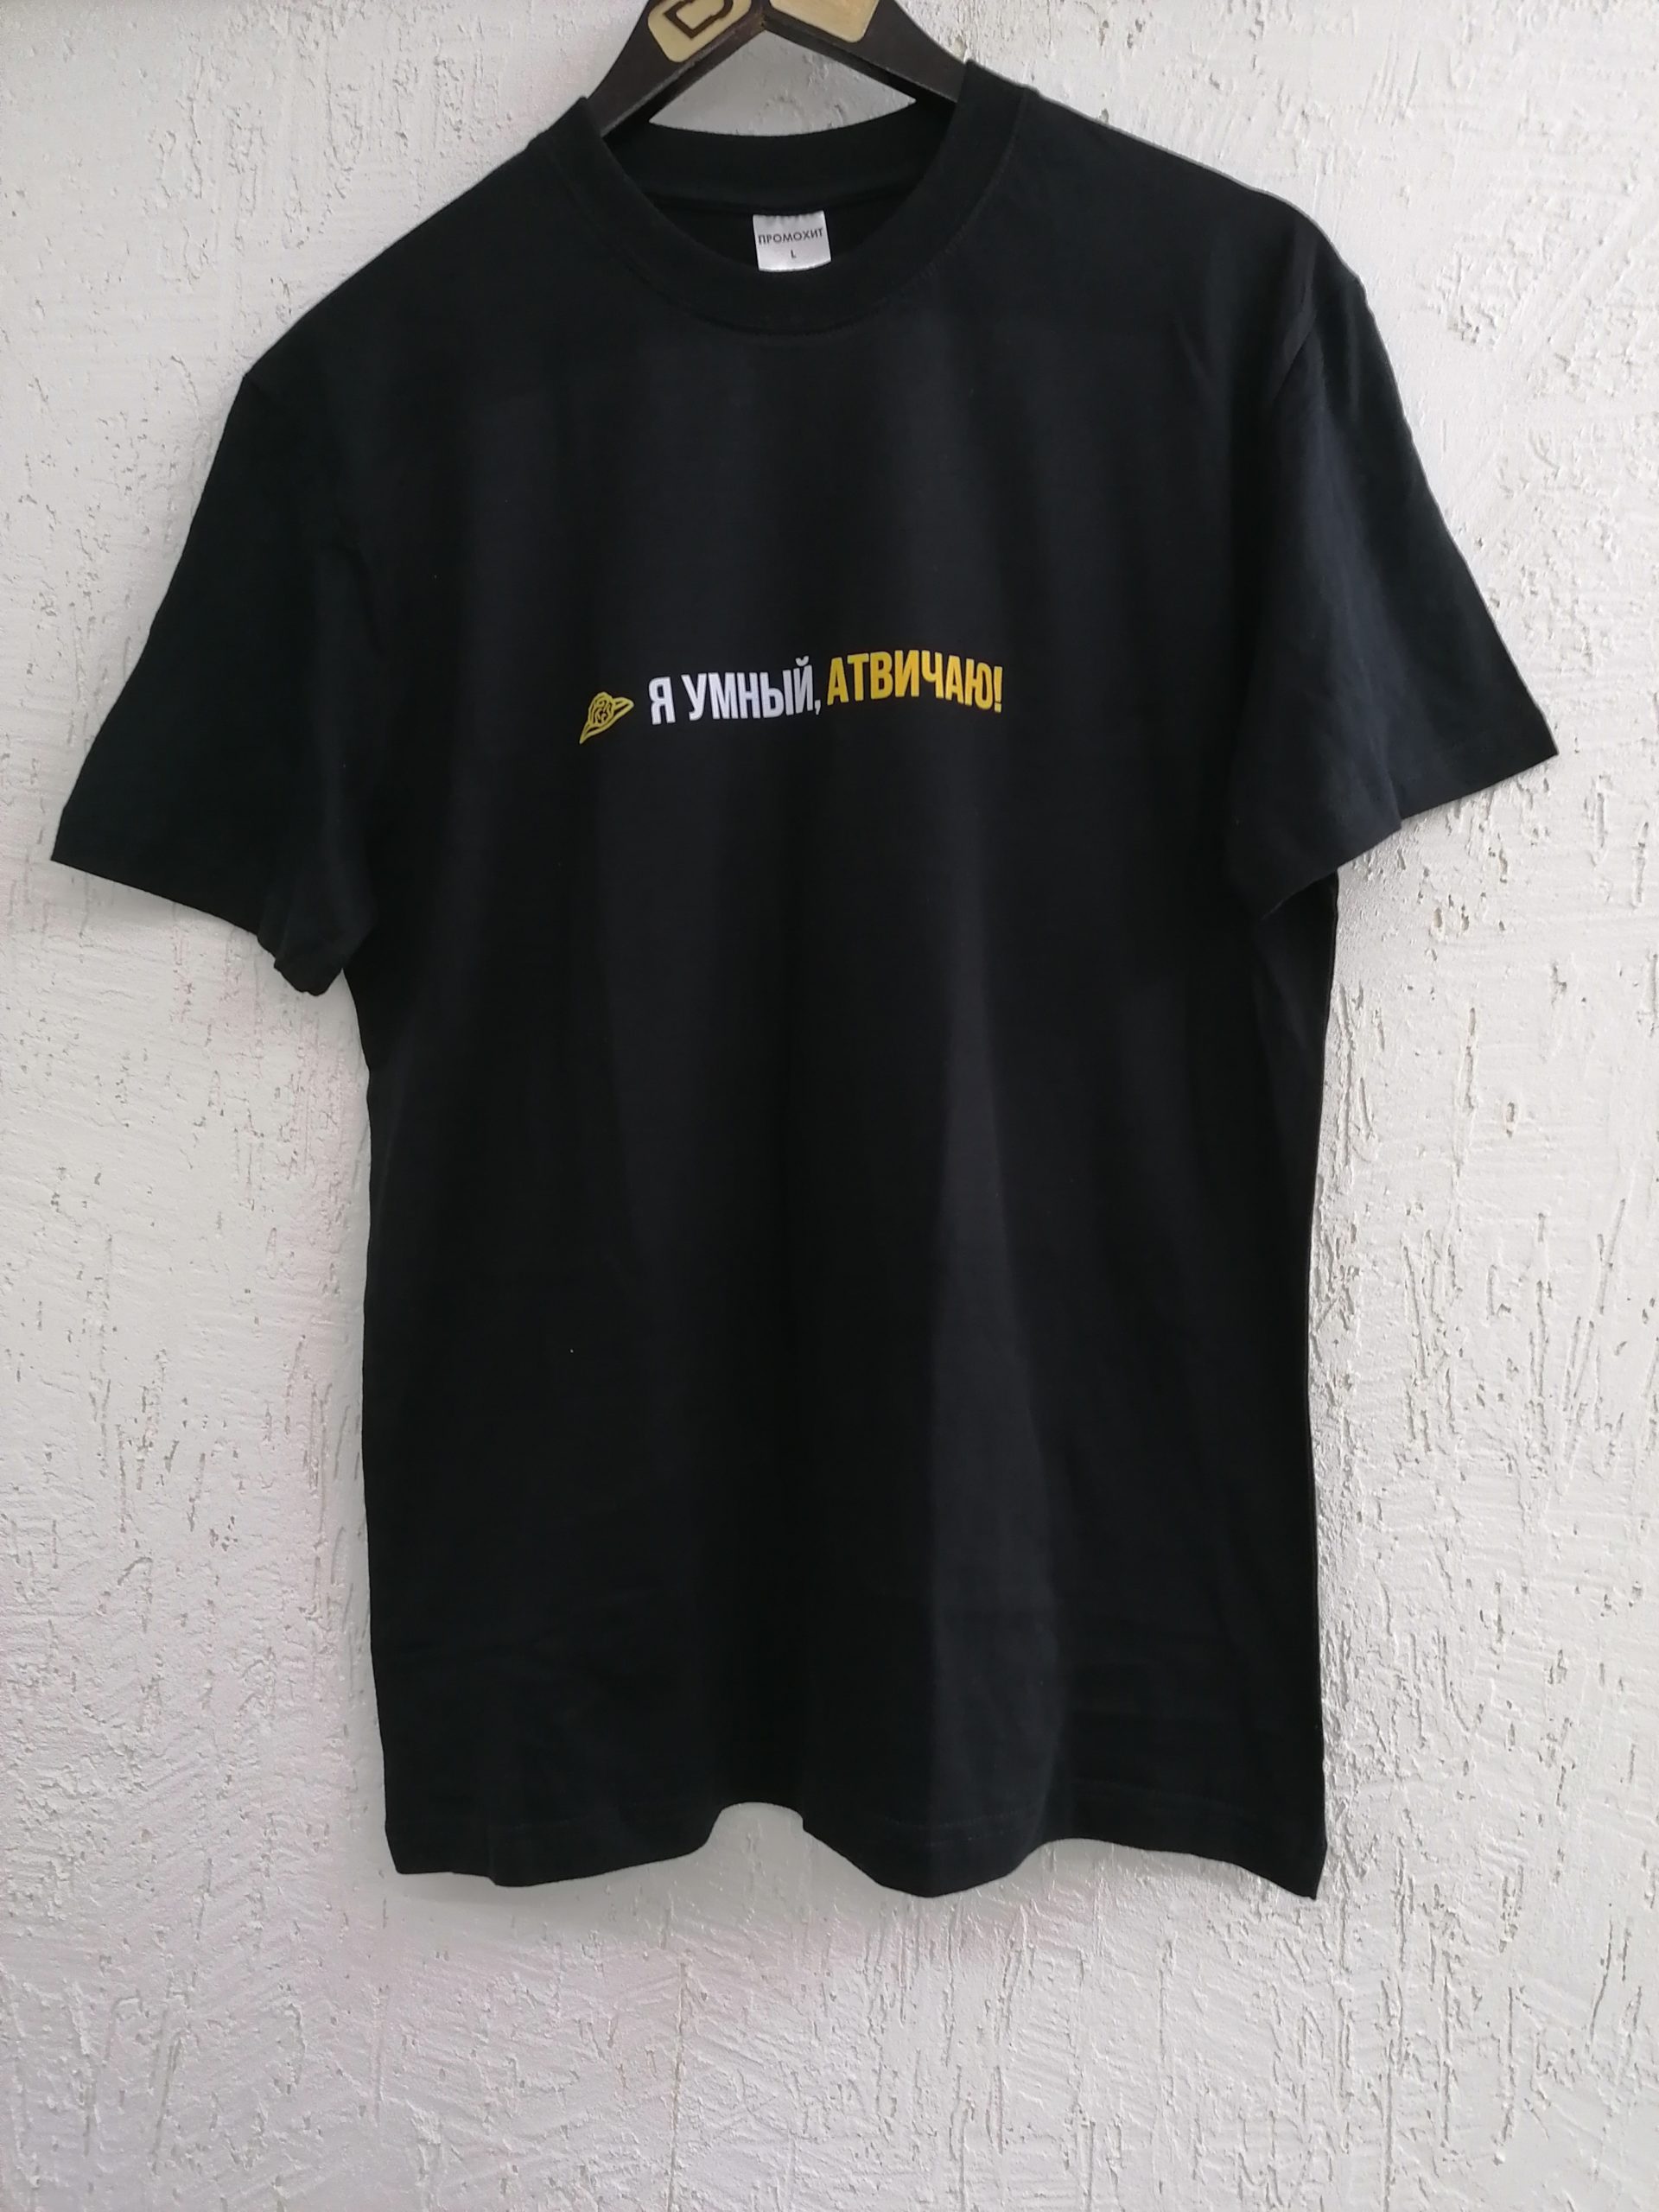 черная хлопковая футболка с надписью сделанным на DTF